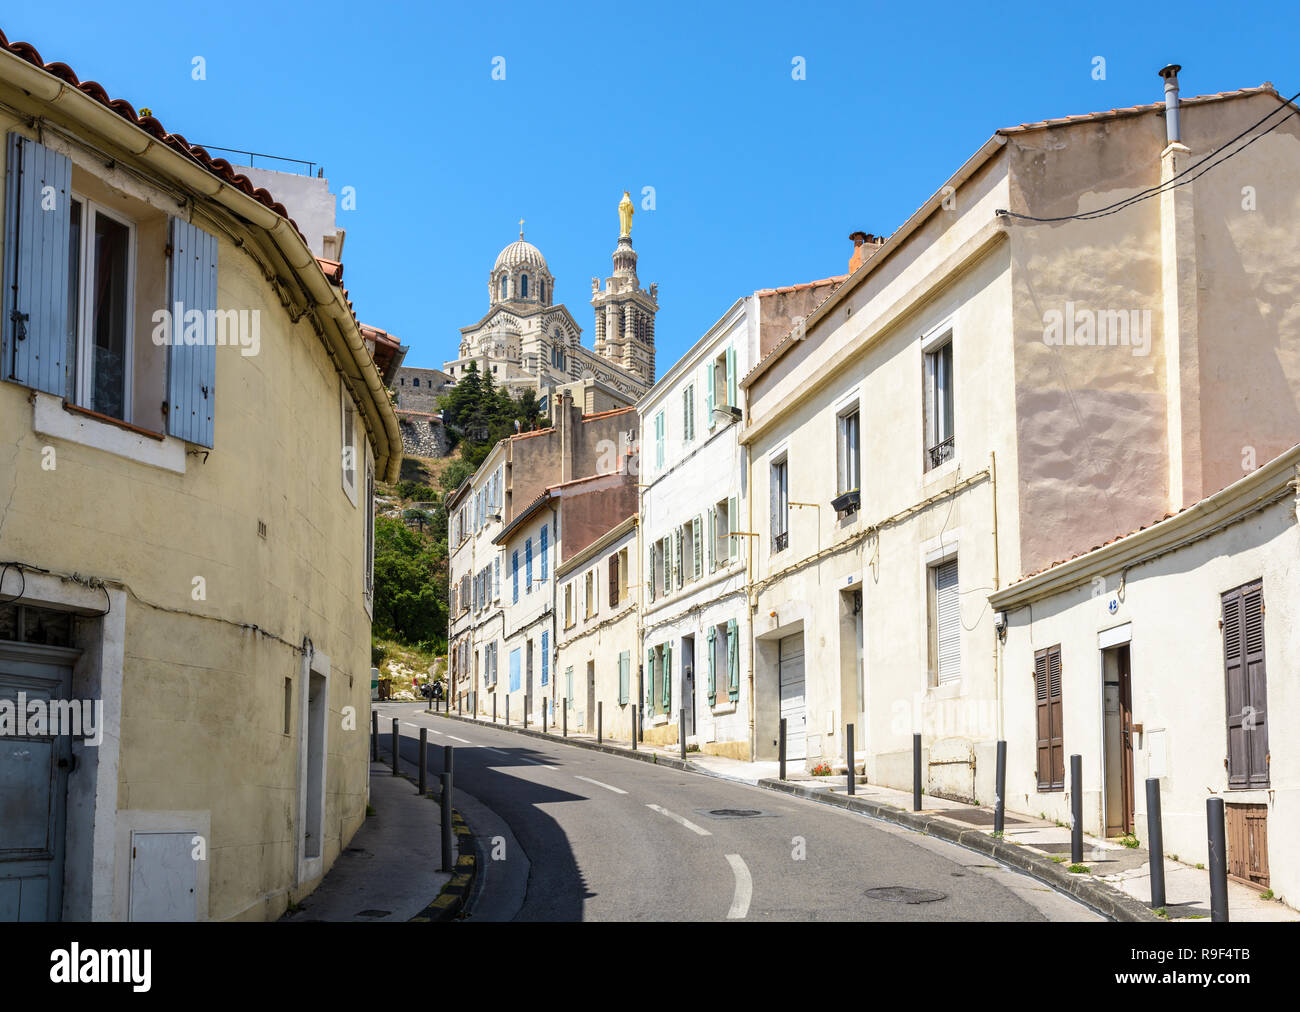 Una stretta strada in pendenza confina con vecchie case a schiera a Marsiglia, Francia, andando fino a Notre Dame de la Garde basilica sulla sommità della collina. Foto Stock